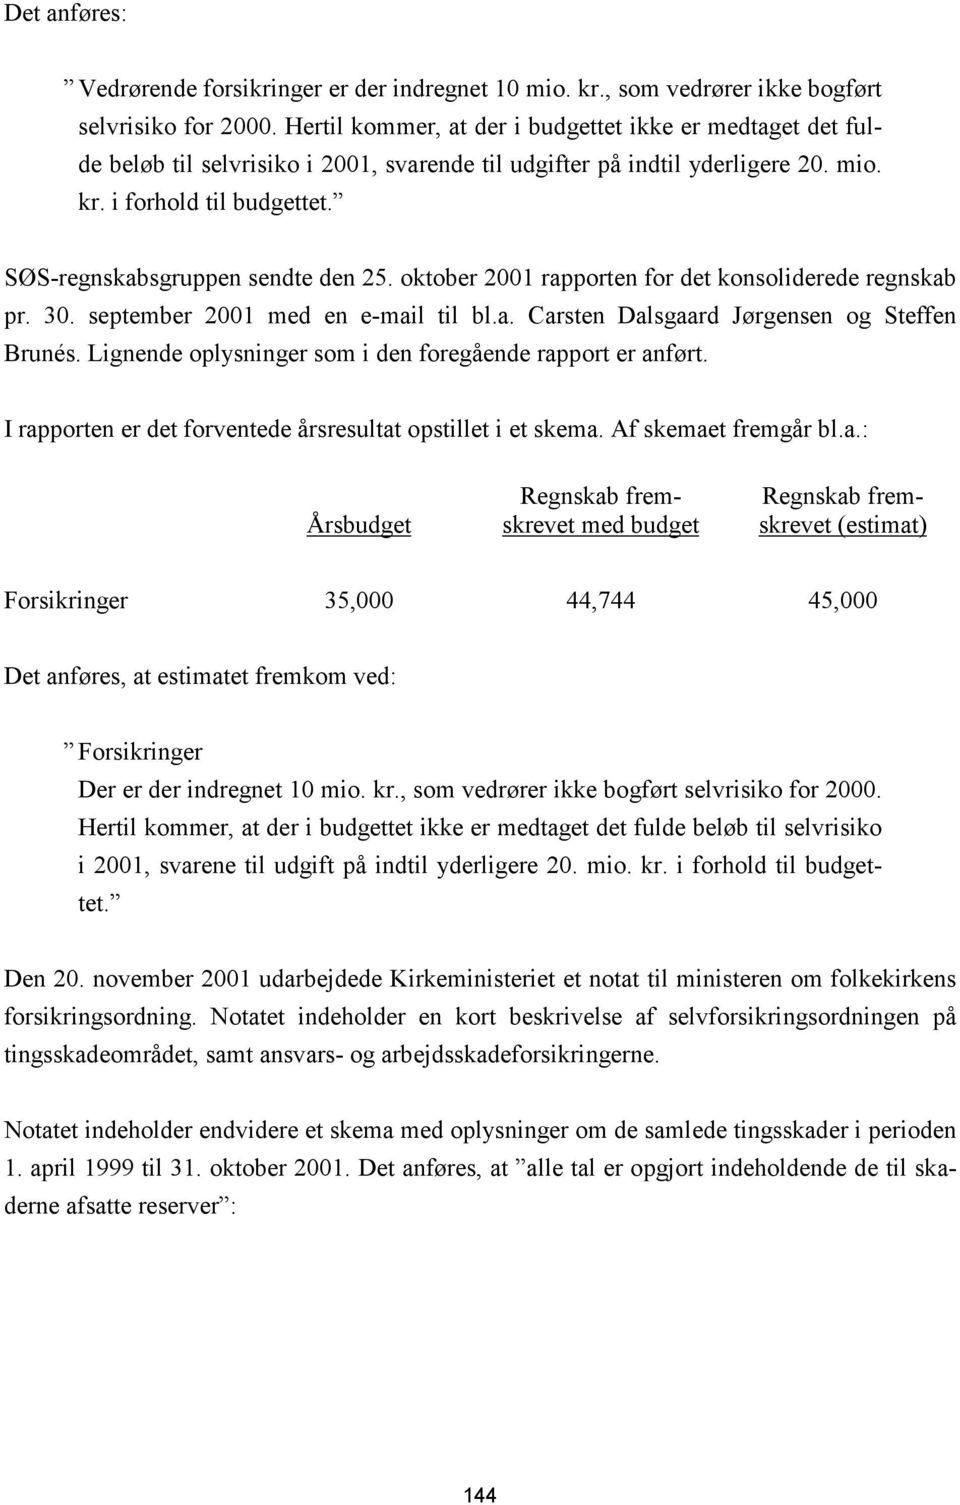 SØS-regnskabsgruppen sendte den 25. oktober 2001 rapporten for det konsoliderede regnskab pr. 30. september 2001 med en e-mail til bl.a. Carsten Dalsgaard Jørgensen og Steffen Brunés.